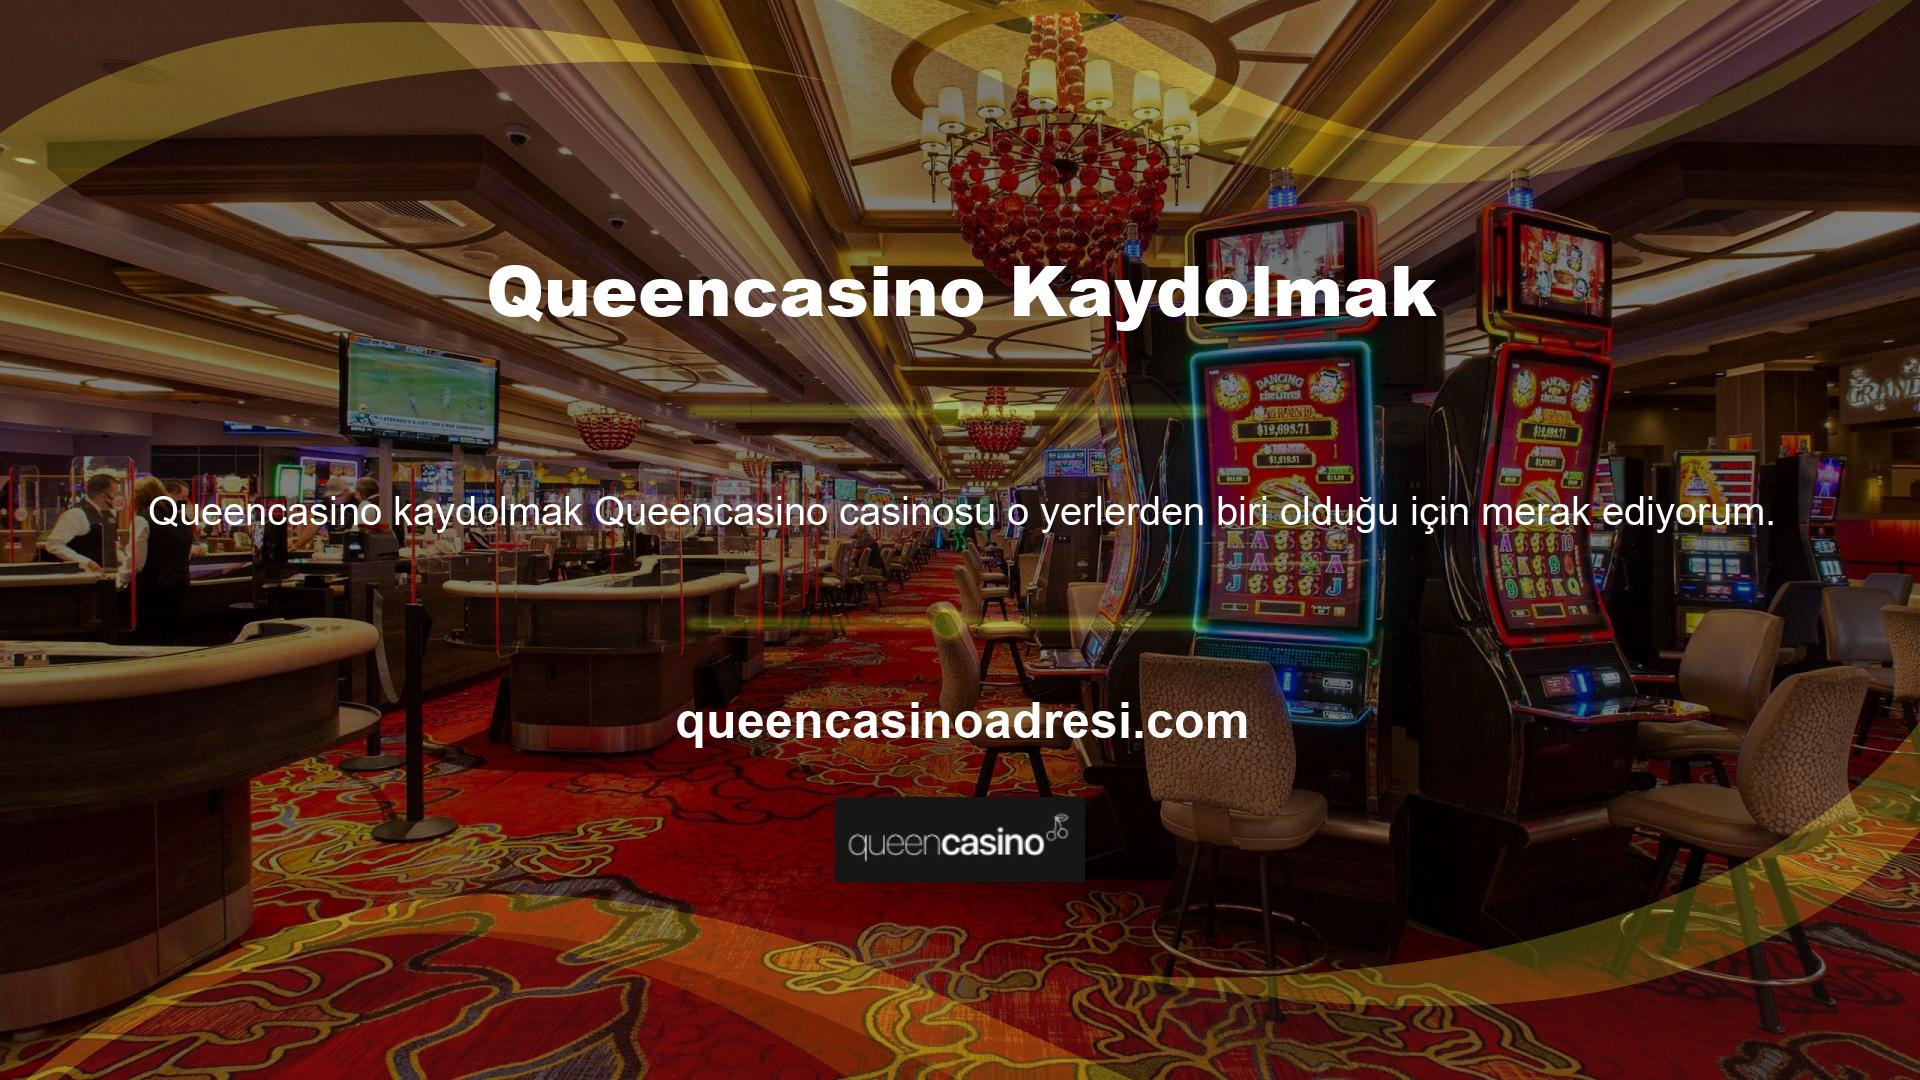 Queencasino Casino planı çok sayıda olasılık sunuyor